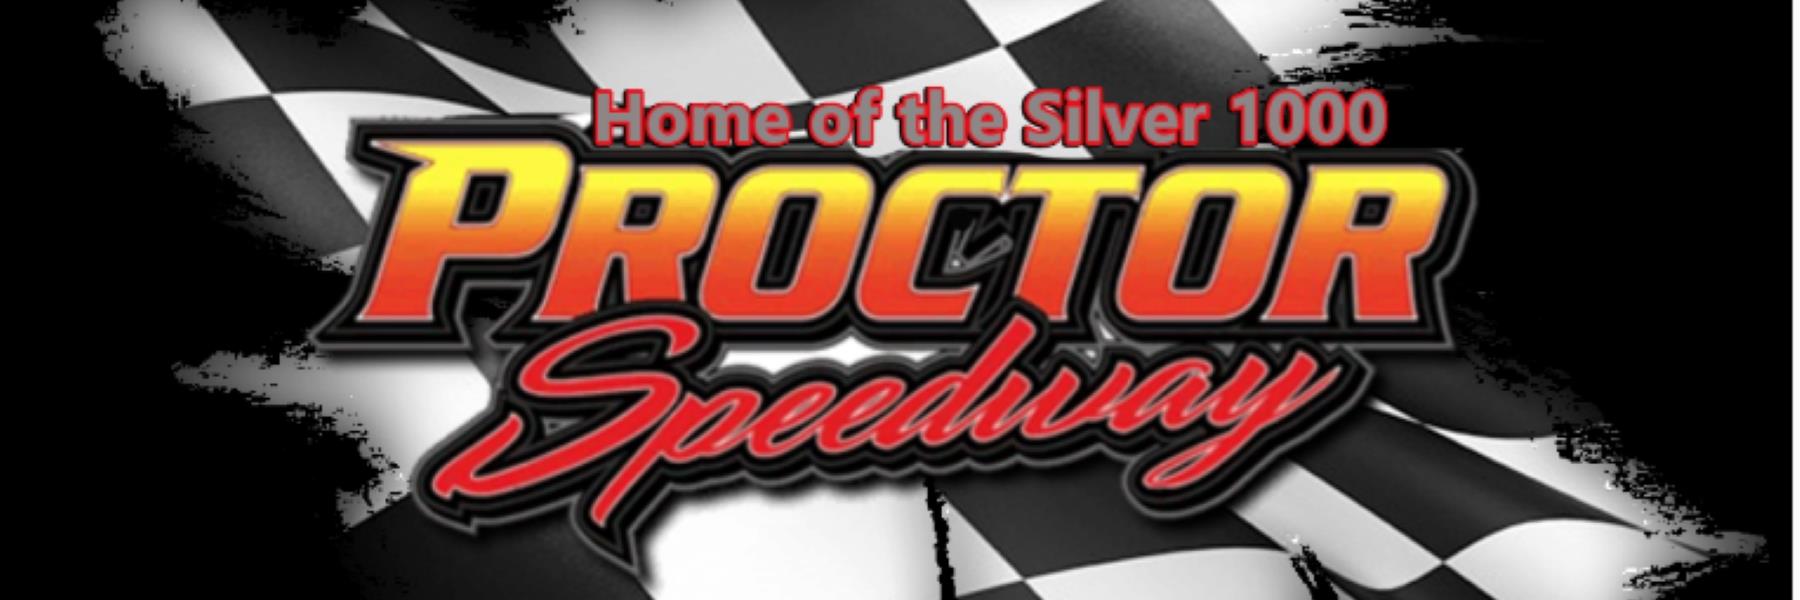 6/26/2022 - Proctor Speedway